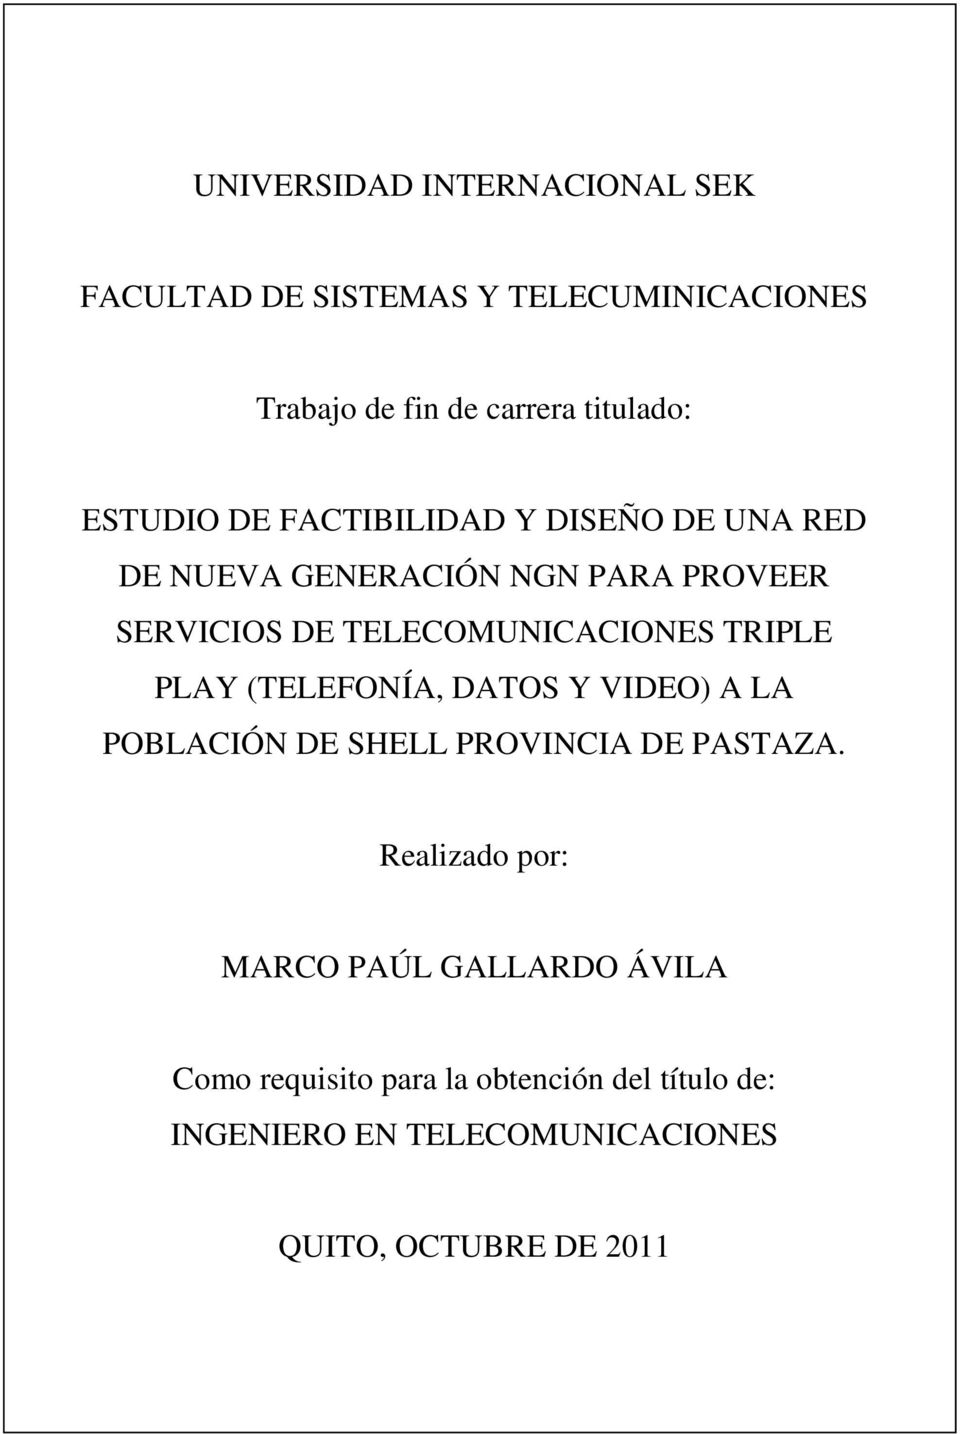 SERVICIOS DE TELECOMUNICACIONES TRIPLE PLAY (TELEFONÍA, DATOS Y VIDEO) A LA POBLACIÓN DE SHELL PROVINCIA DE PASTAZA.